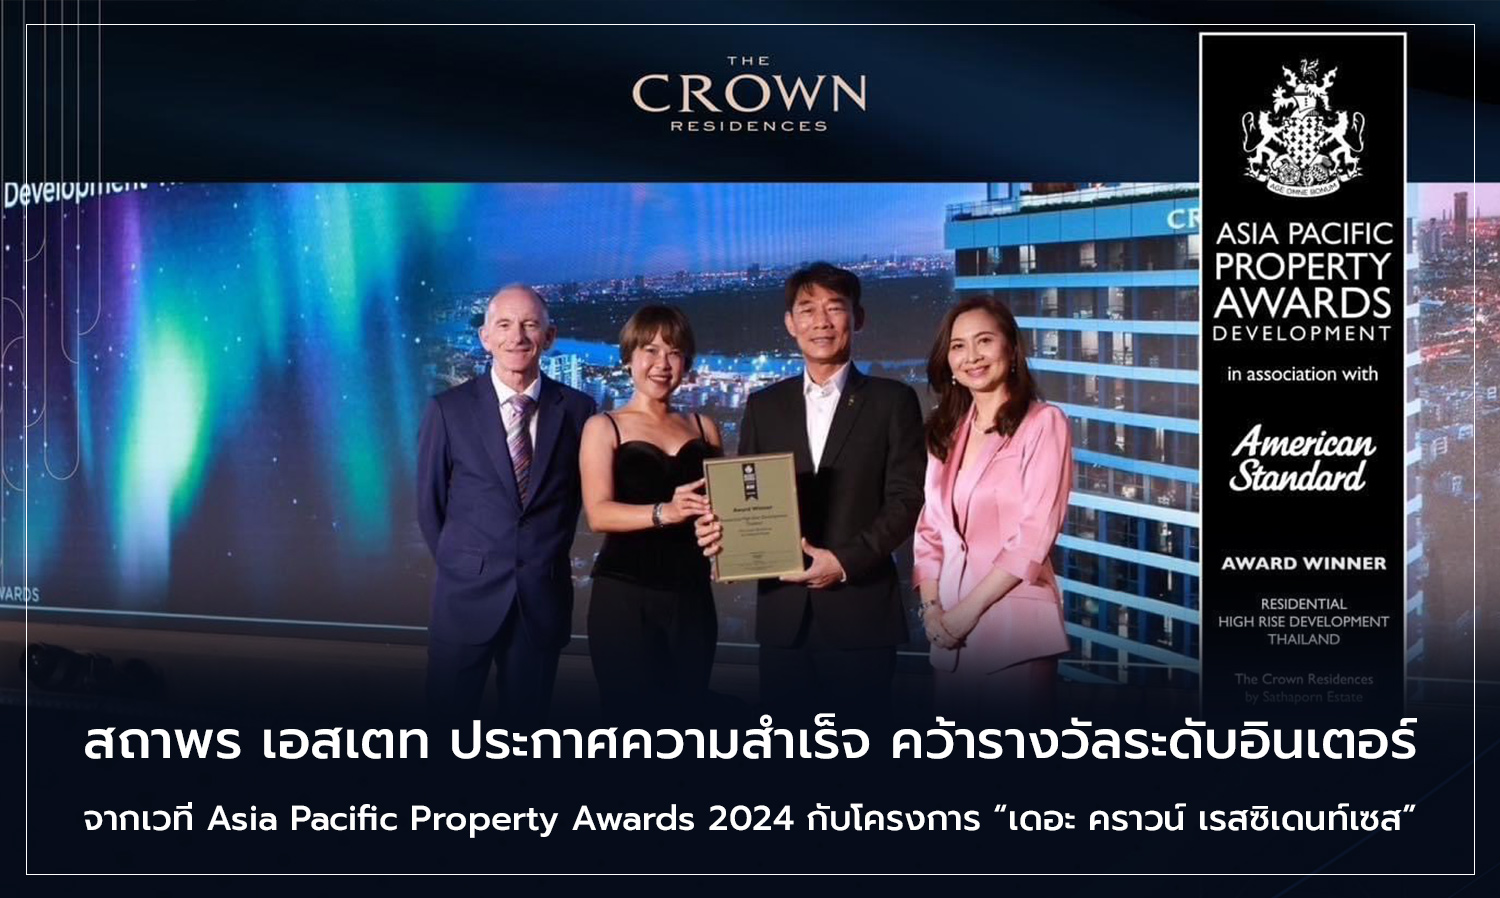 สถาพร เอสเตท ประกาศความสำเร็จ คว้ารางวัลระดับอินเตอร์จากเวที Asia Pacific Property Awards 2024 กับโครงการ “เดอะ คราวน์ เรสซิเดนท์เซส” คอนโดฯ FREEHOLD ระดับลักชัวรี บนทำเลศักยภาพใจกลาง Ultra CBD สาทร - พระราม 4